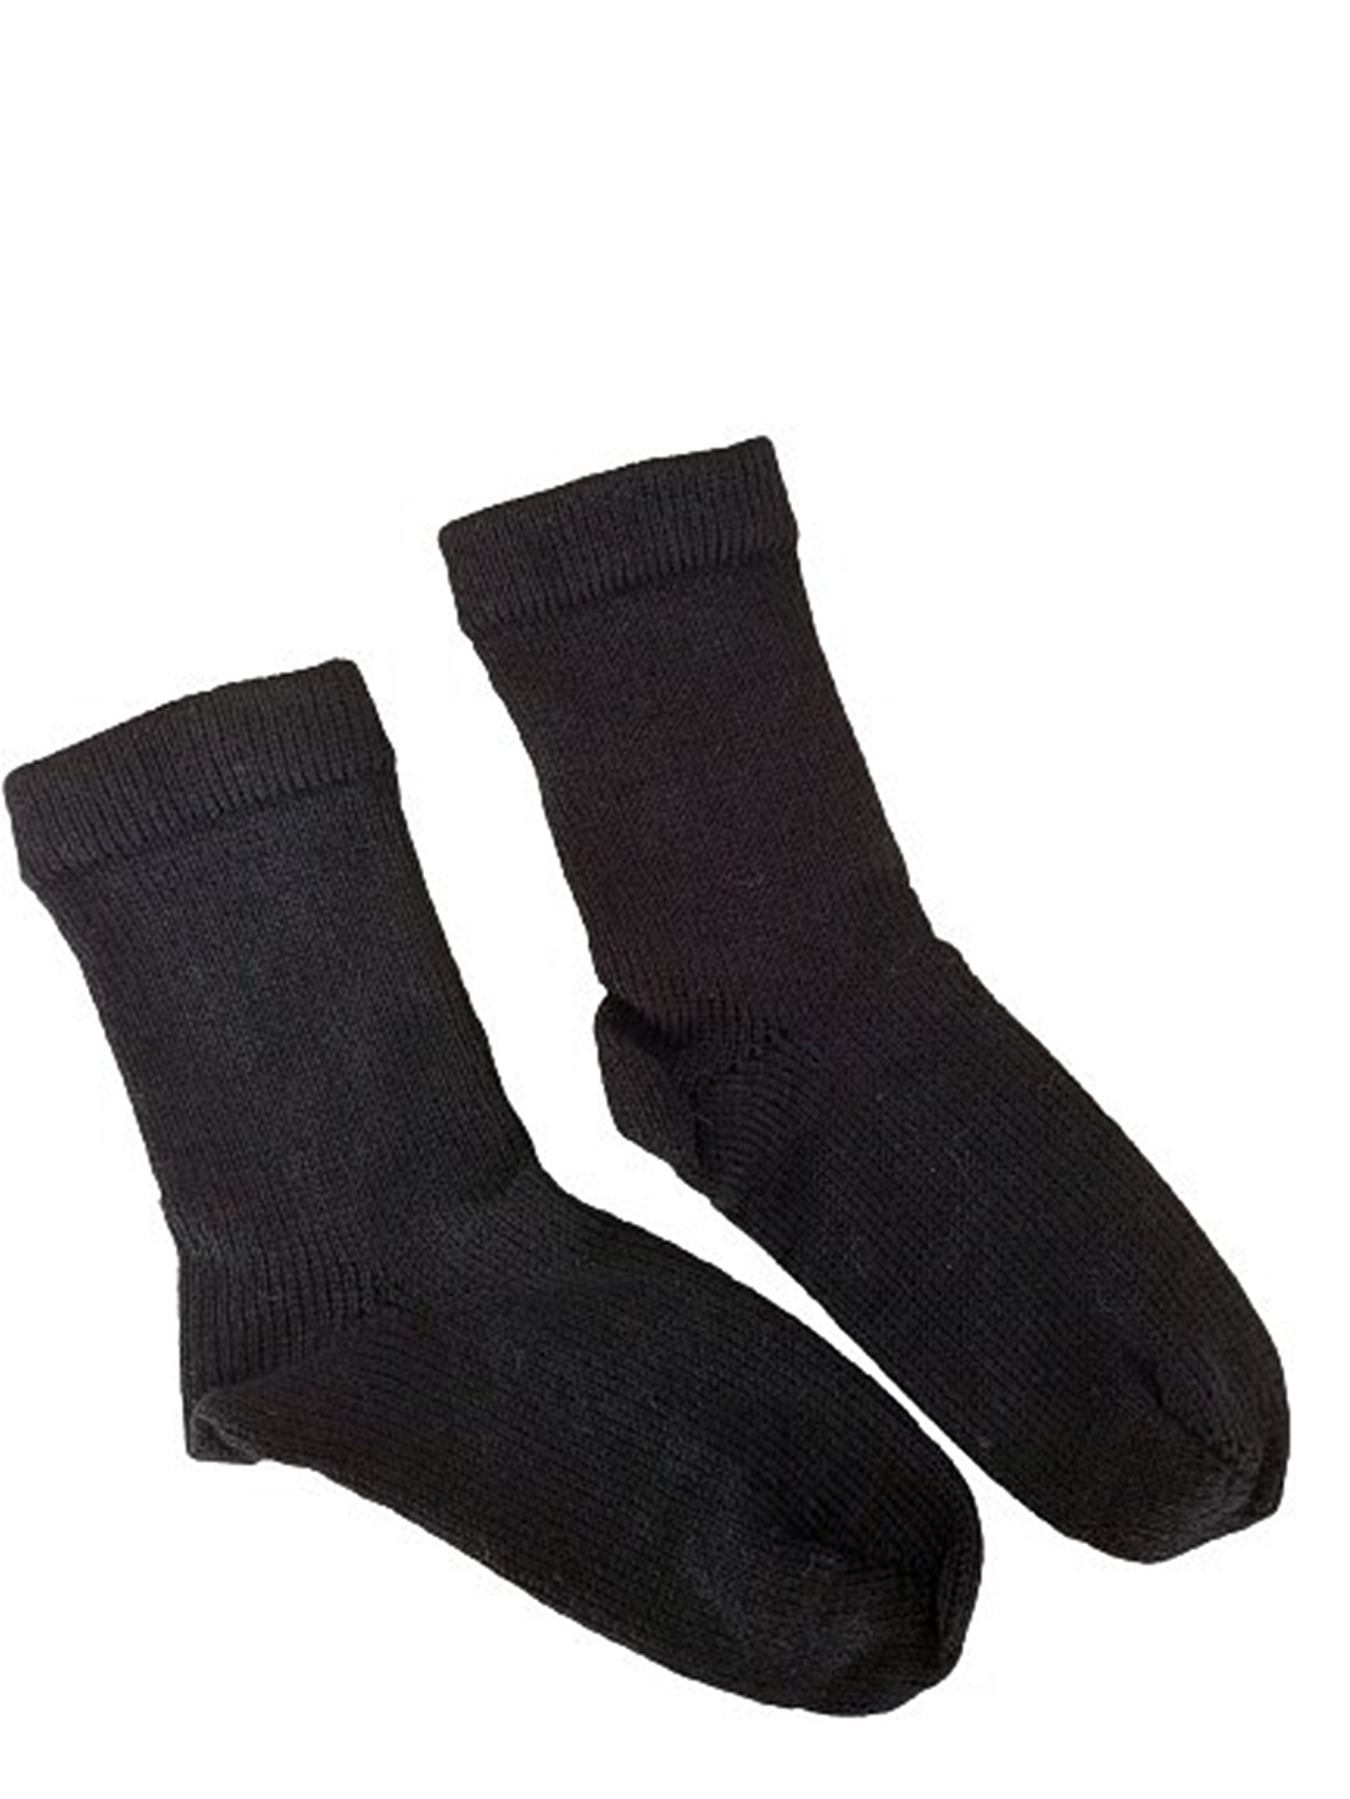 Größe 37 - Socken in klassischem Schwarz